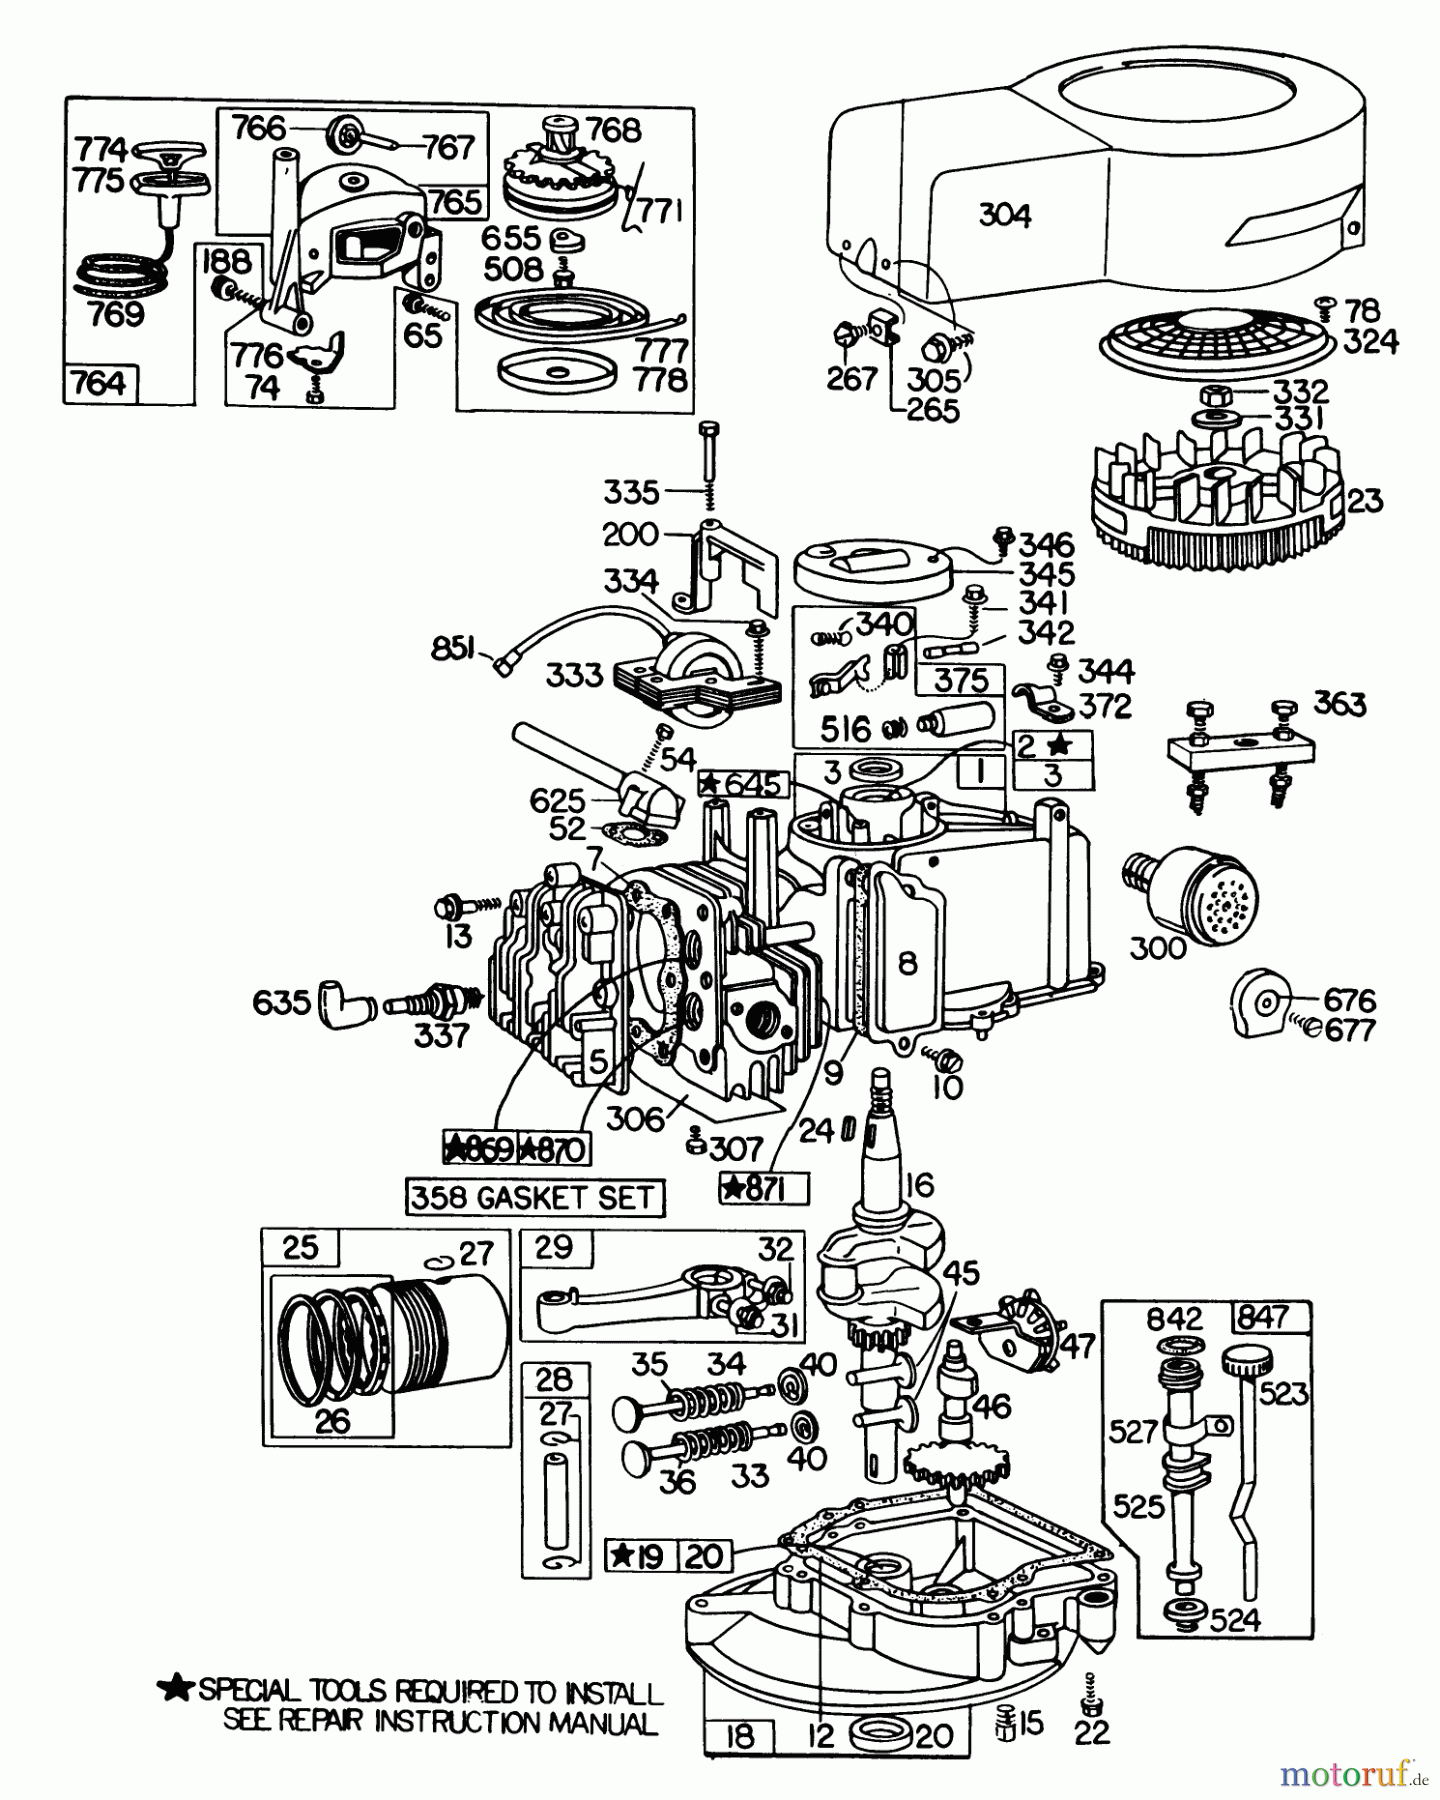  Toro Neu Mowers, Walk-Behind Seite 1 20785 - Toro Lawnmower, 1981 (1000001-1999999) ENGINE BRIGGS & STRATTON MODEL NO. 110908-0380-02